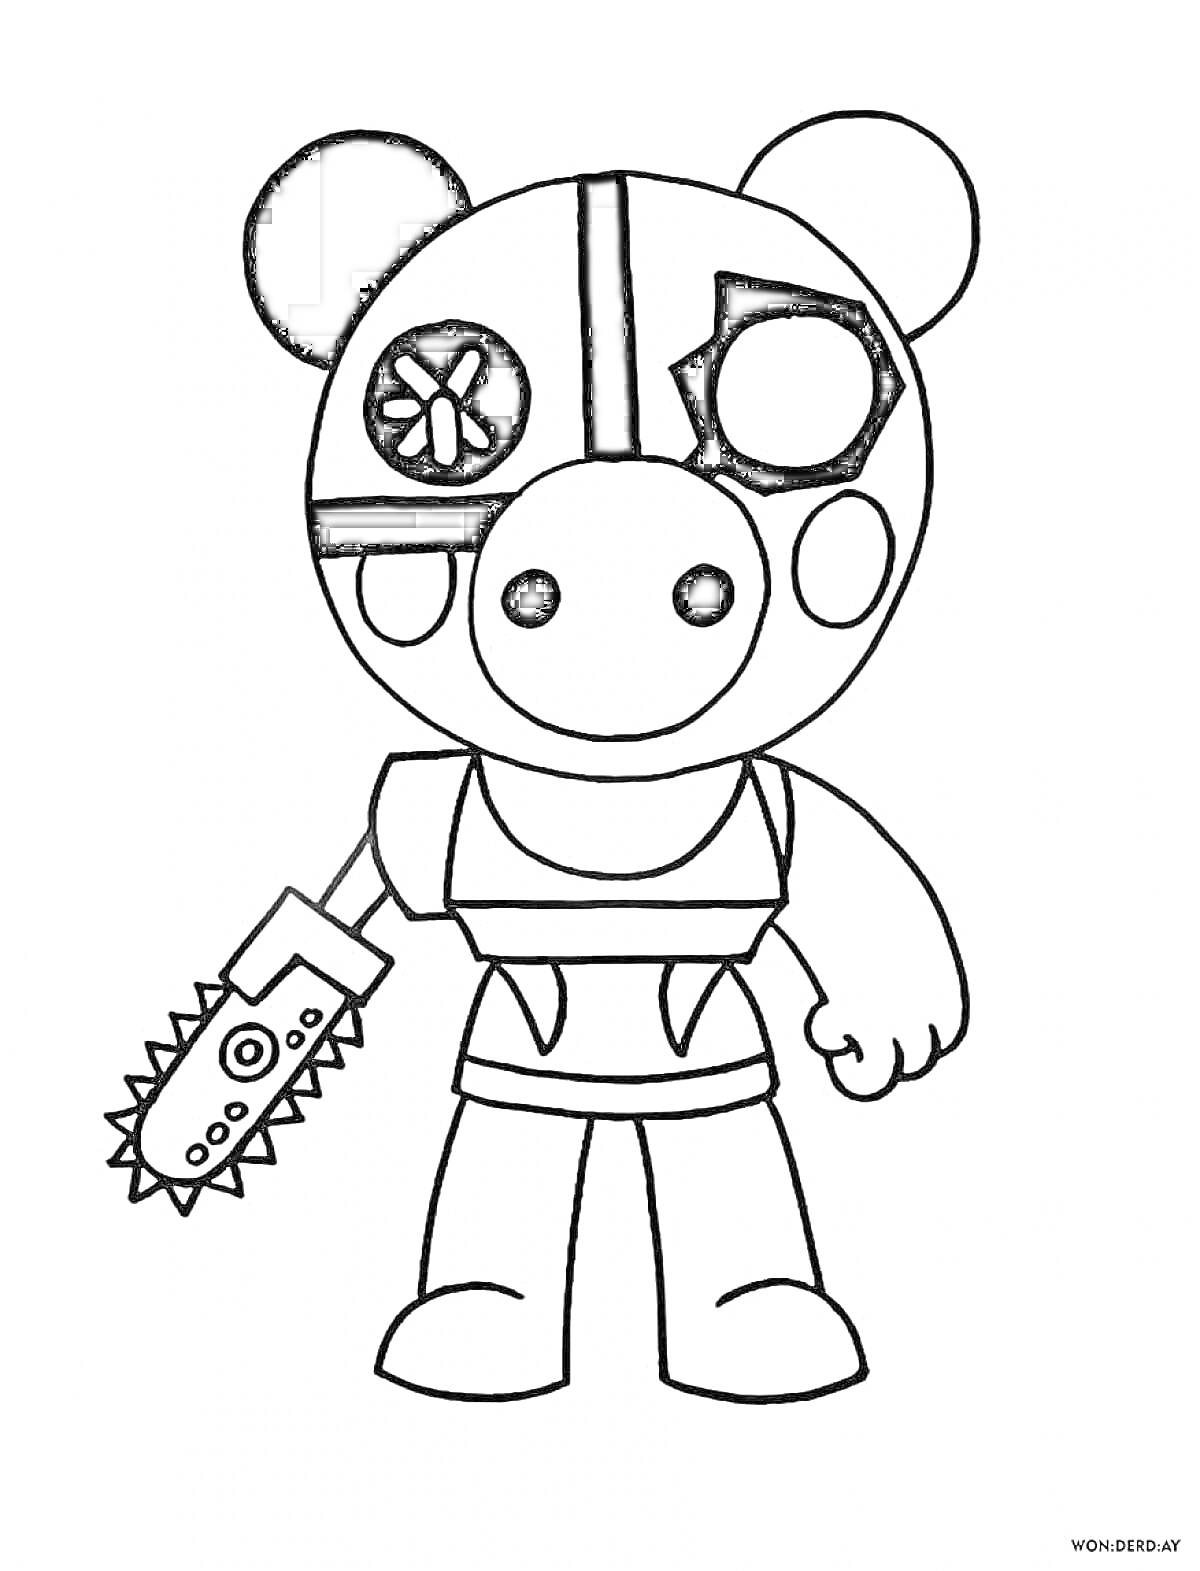 Раскраска персонаж из Roblox с бензопилой, с одним черным ухом, с кругами на лице и в маске